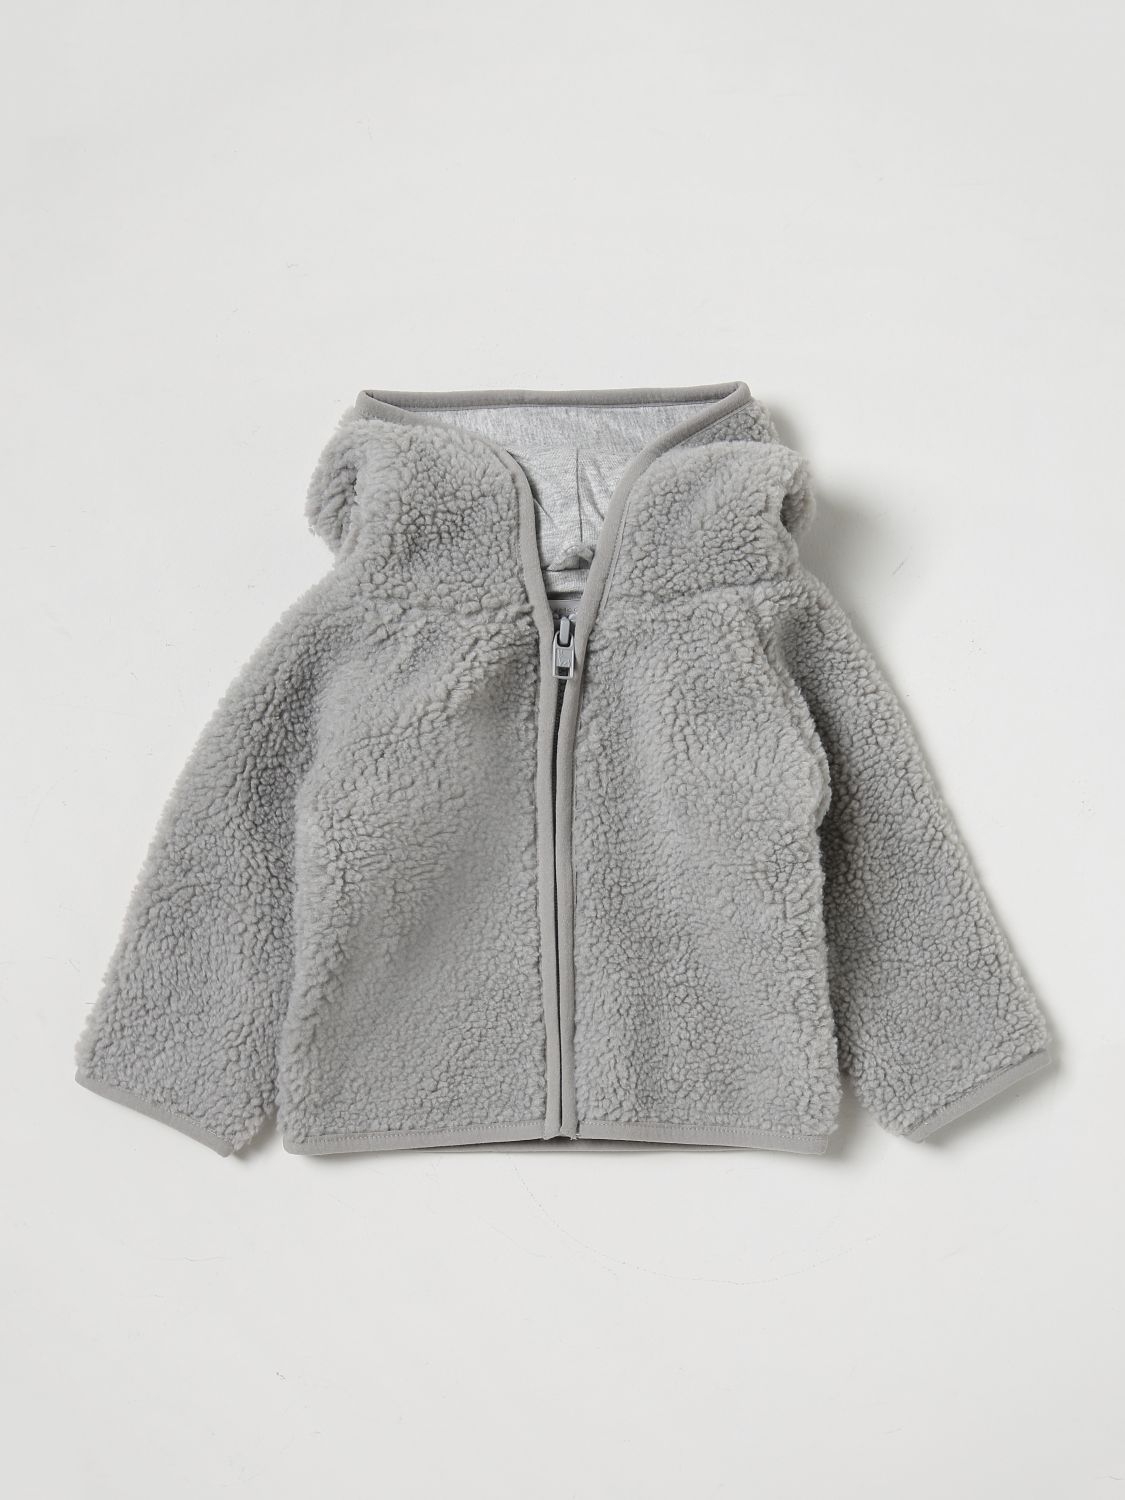 Stella Mccartney Babies' Jacket  Kids Kids In Grey